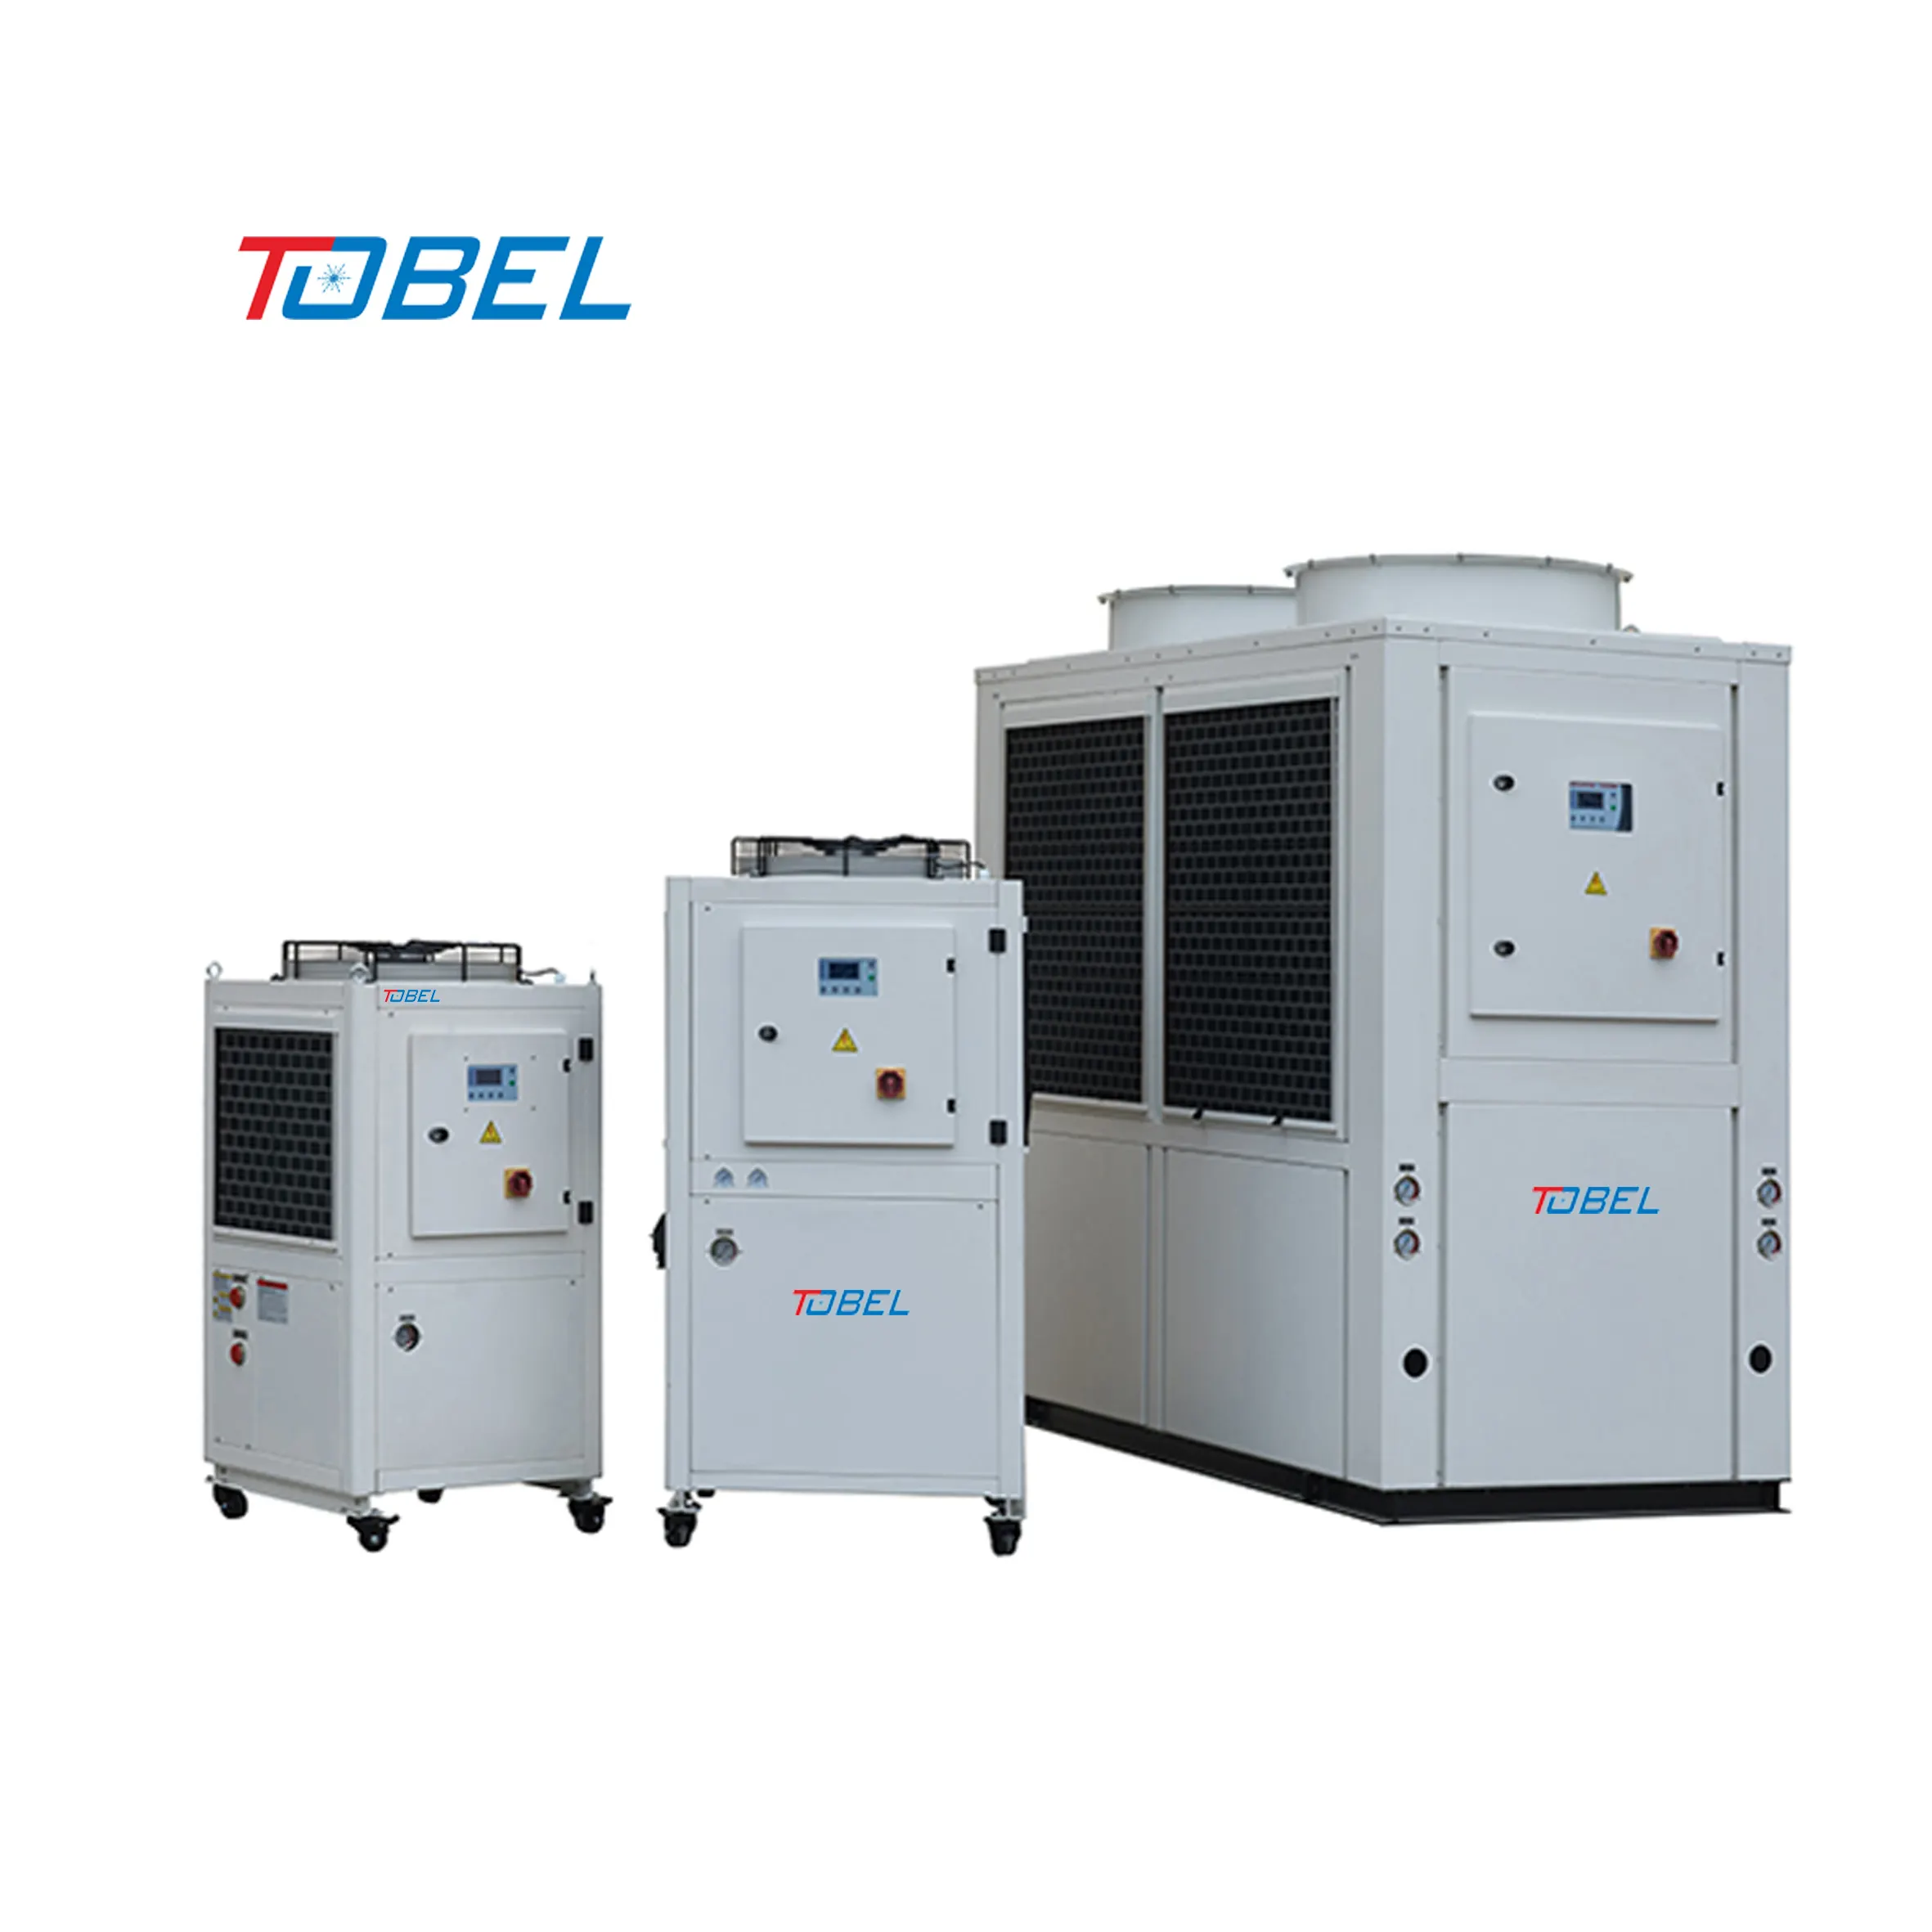 TOBEL 1500 bis 30000 Kcal/h Ölkühlgerät für Schmieröl Hochgeschwindigkeits-Bohrmaschine